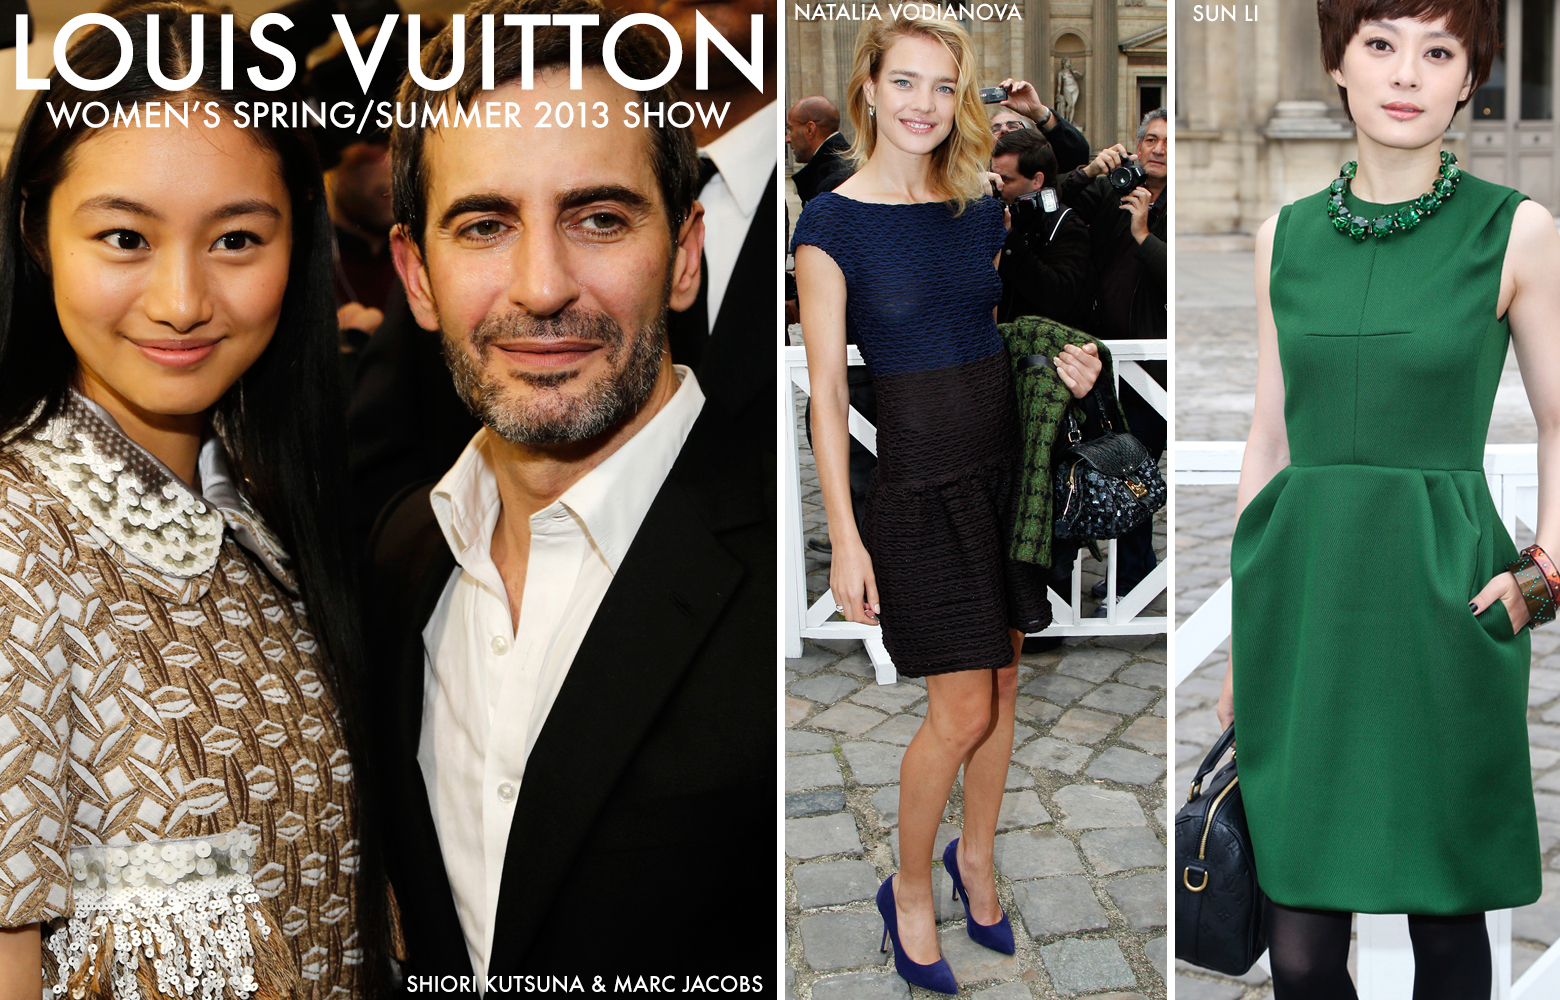 LOUIS VUITTON – Luxury Fashion Spark